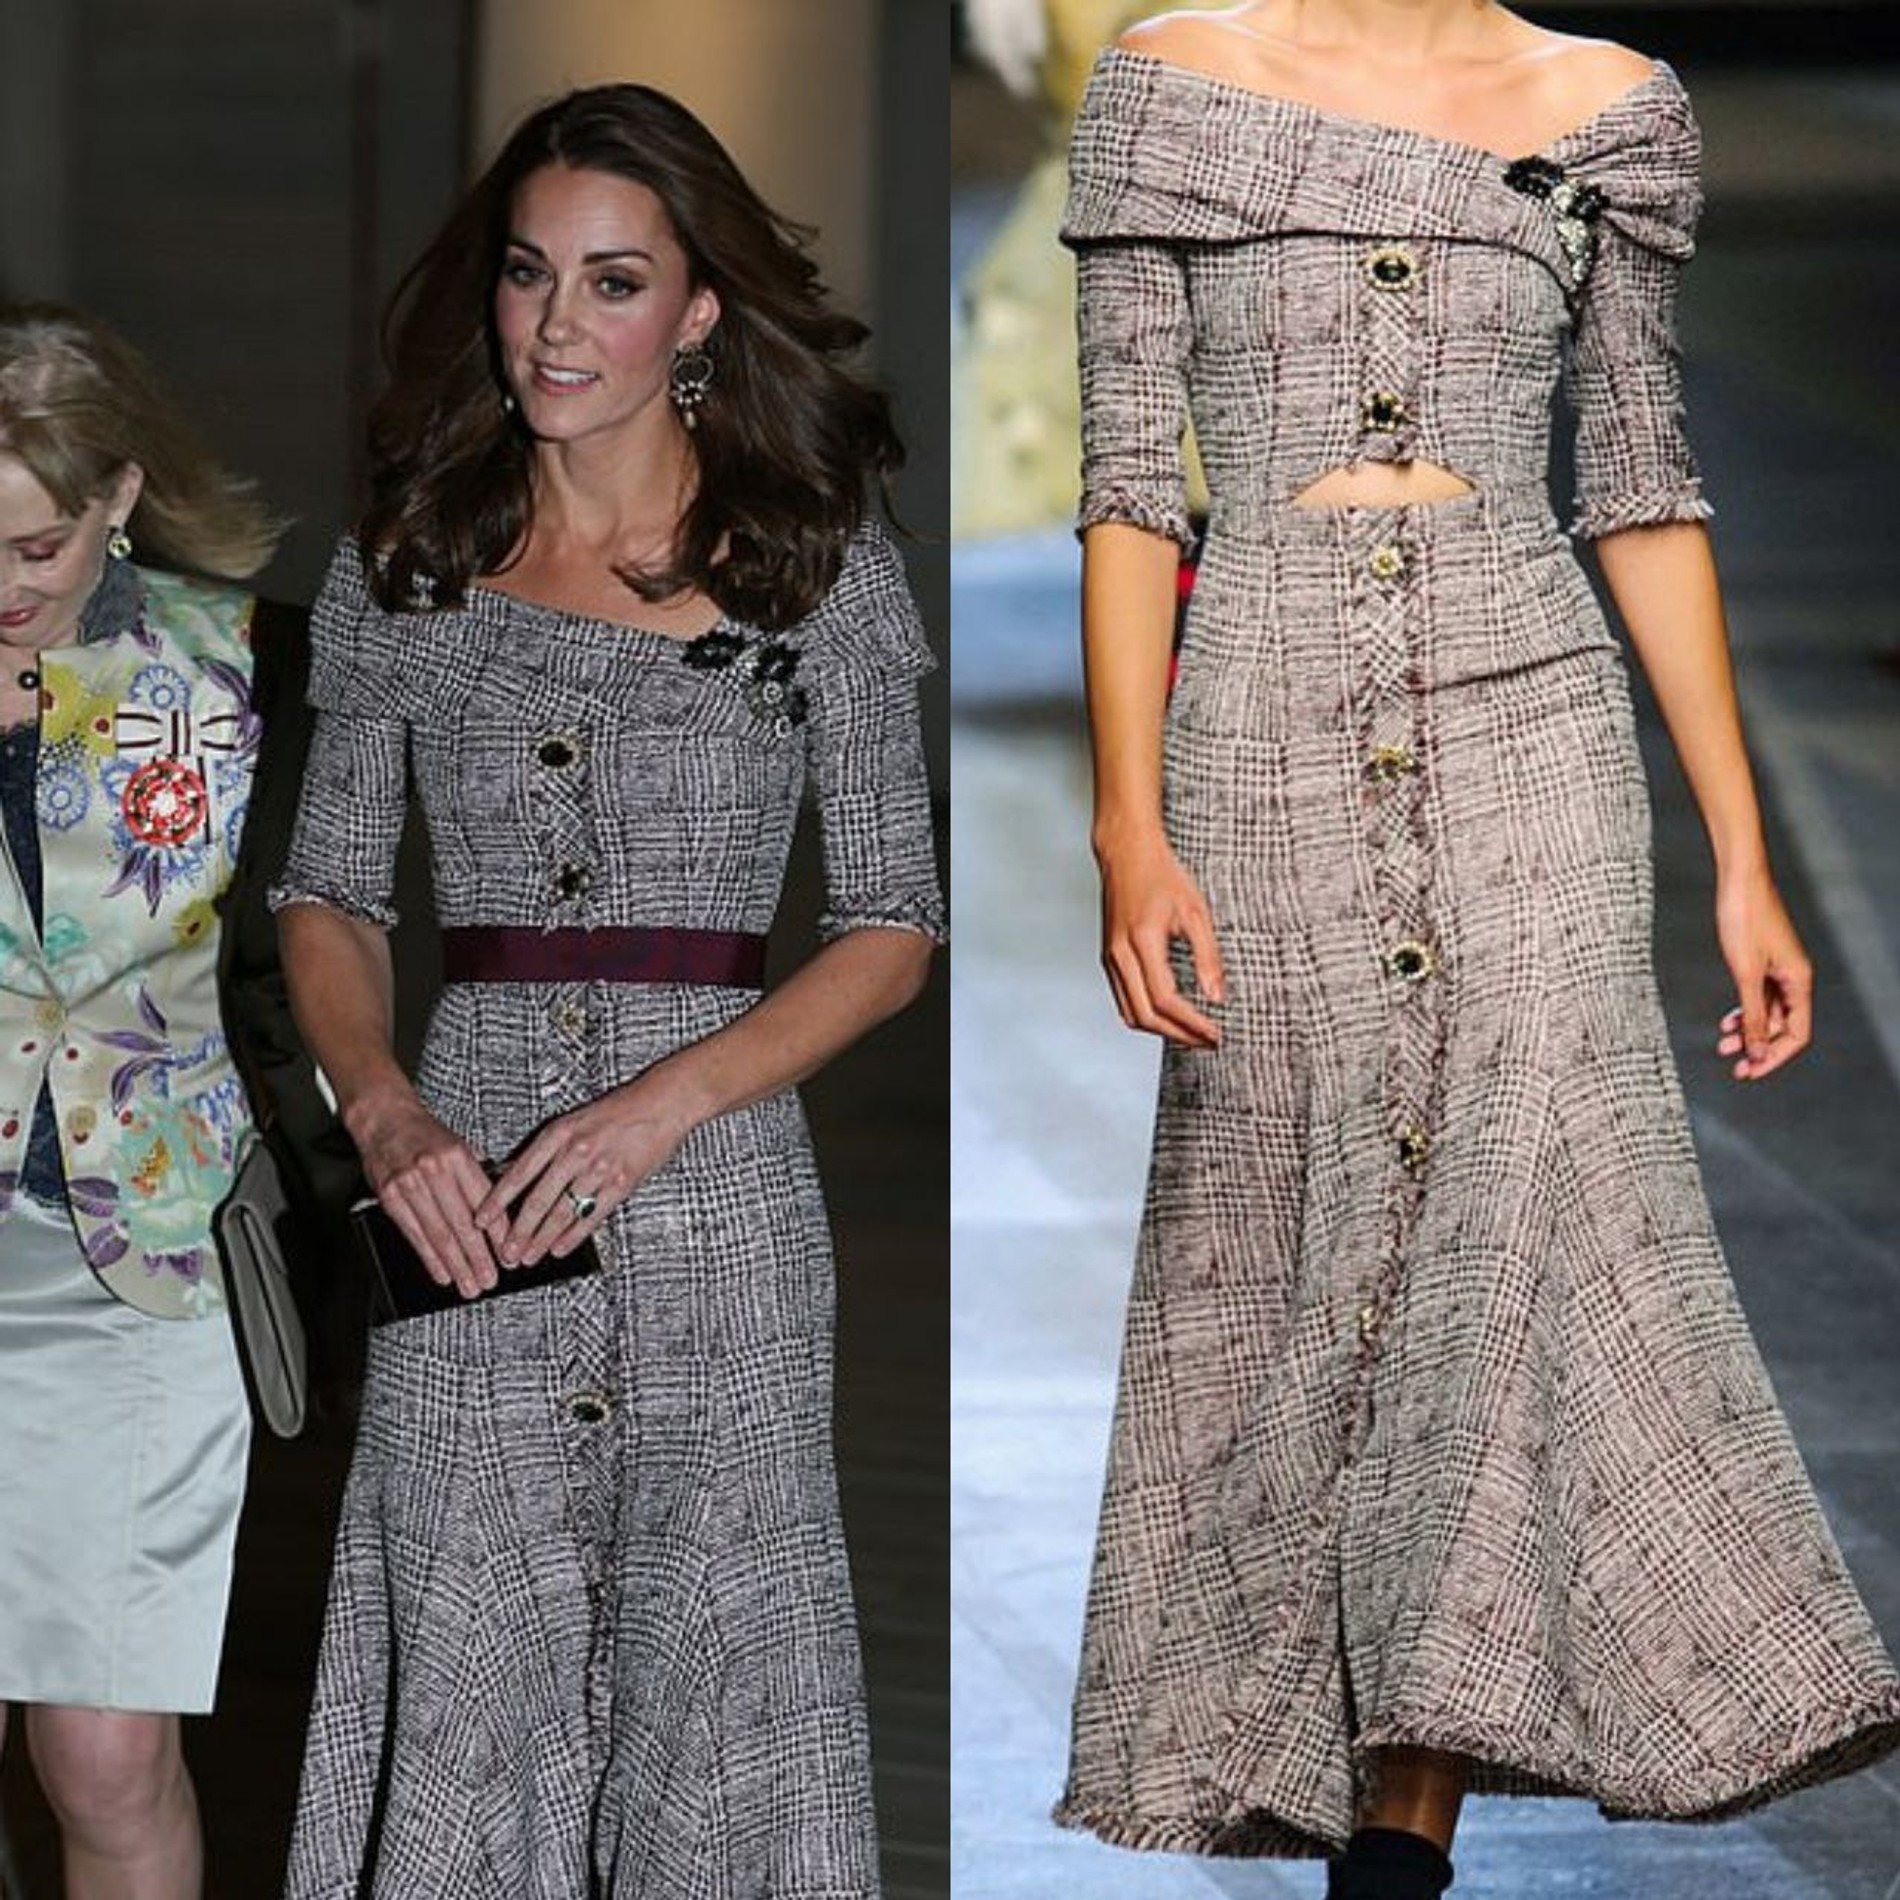 Кейт в платье Erdem в 2018 году на открытии выставки — герцогиня скрыла «непротокольный» вырез на талии при помощи пояса
Коллаж Super